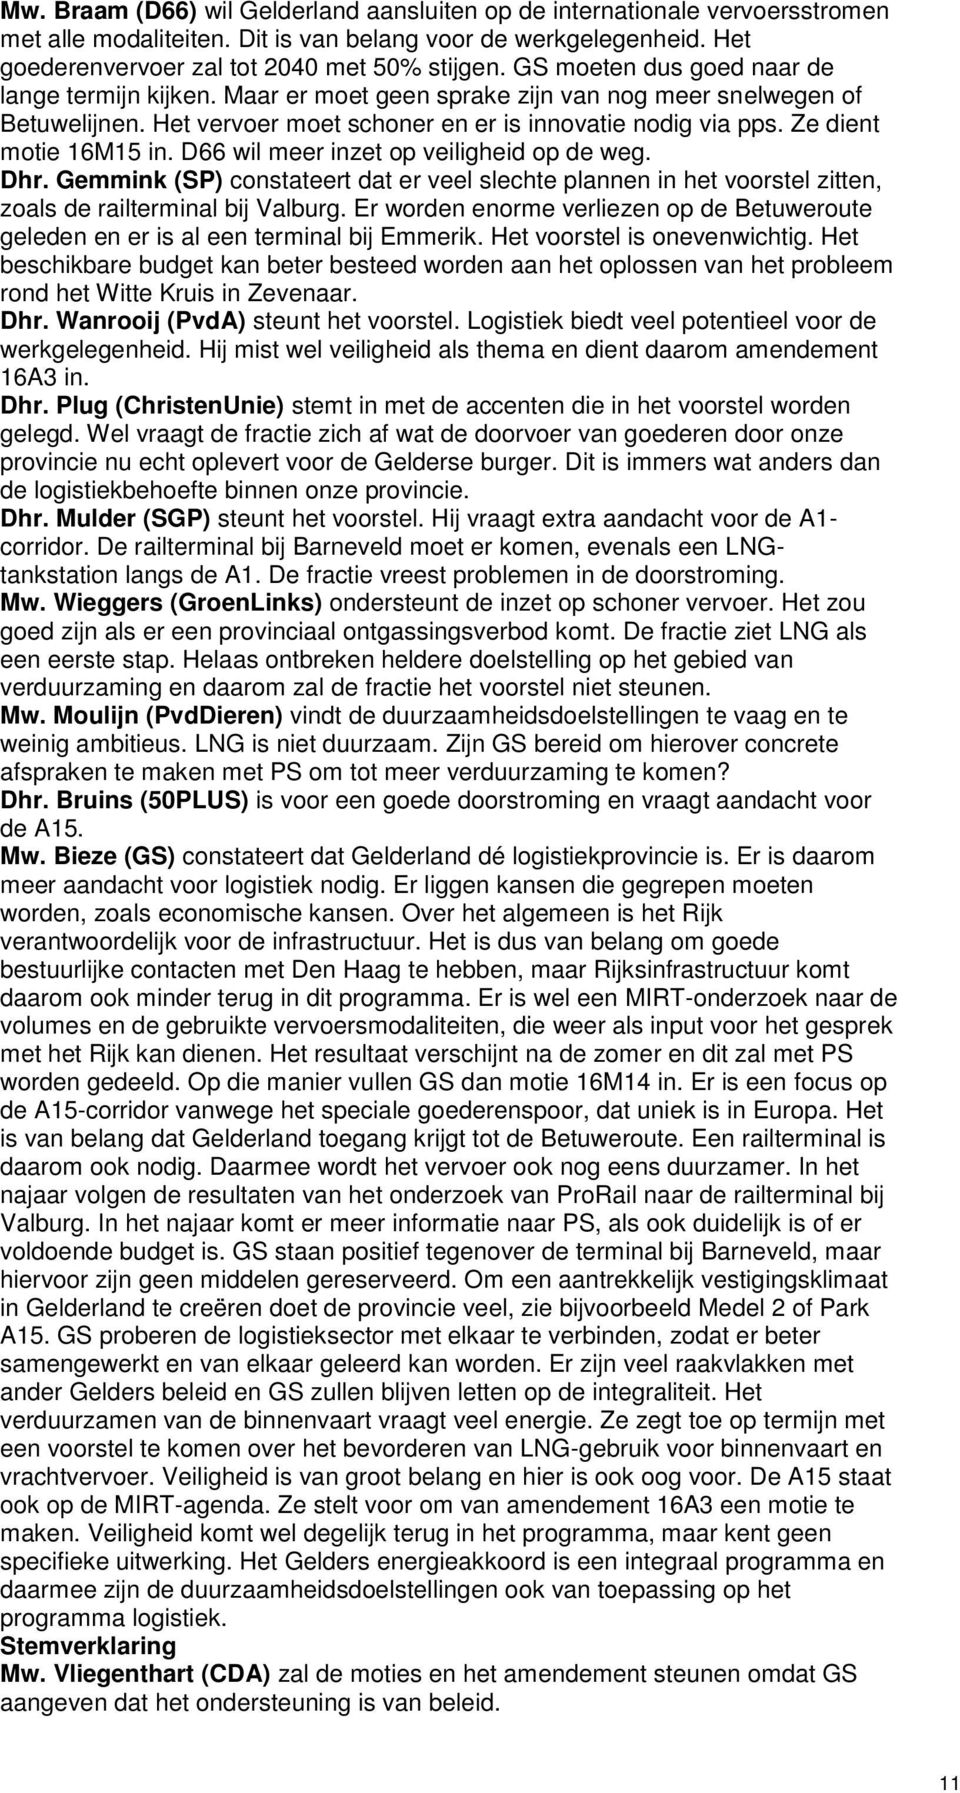 Ze dient motie 16M15 in. D66 wil meer inzet op veiligheid op de weg. Dhr. Gemmink (SP) constateert dat er veel slechte plannen in het voorstel zitten, zoals de railterminal bij Valburg.